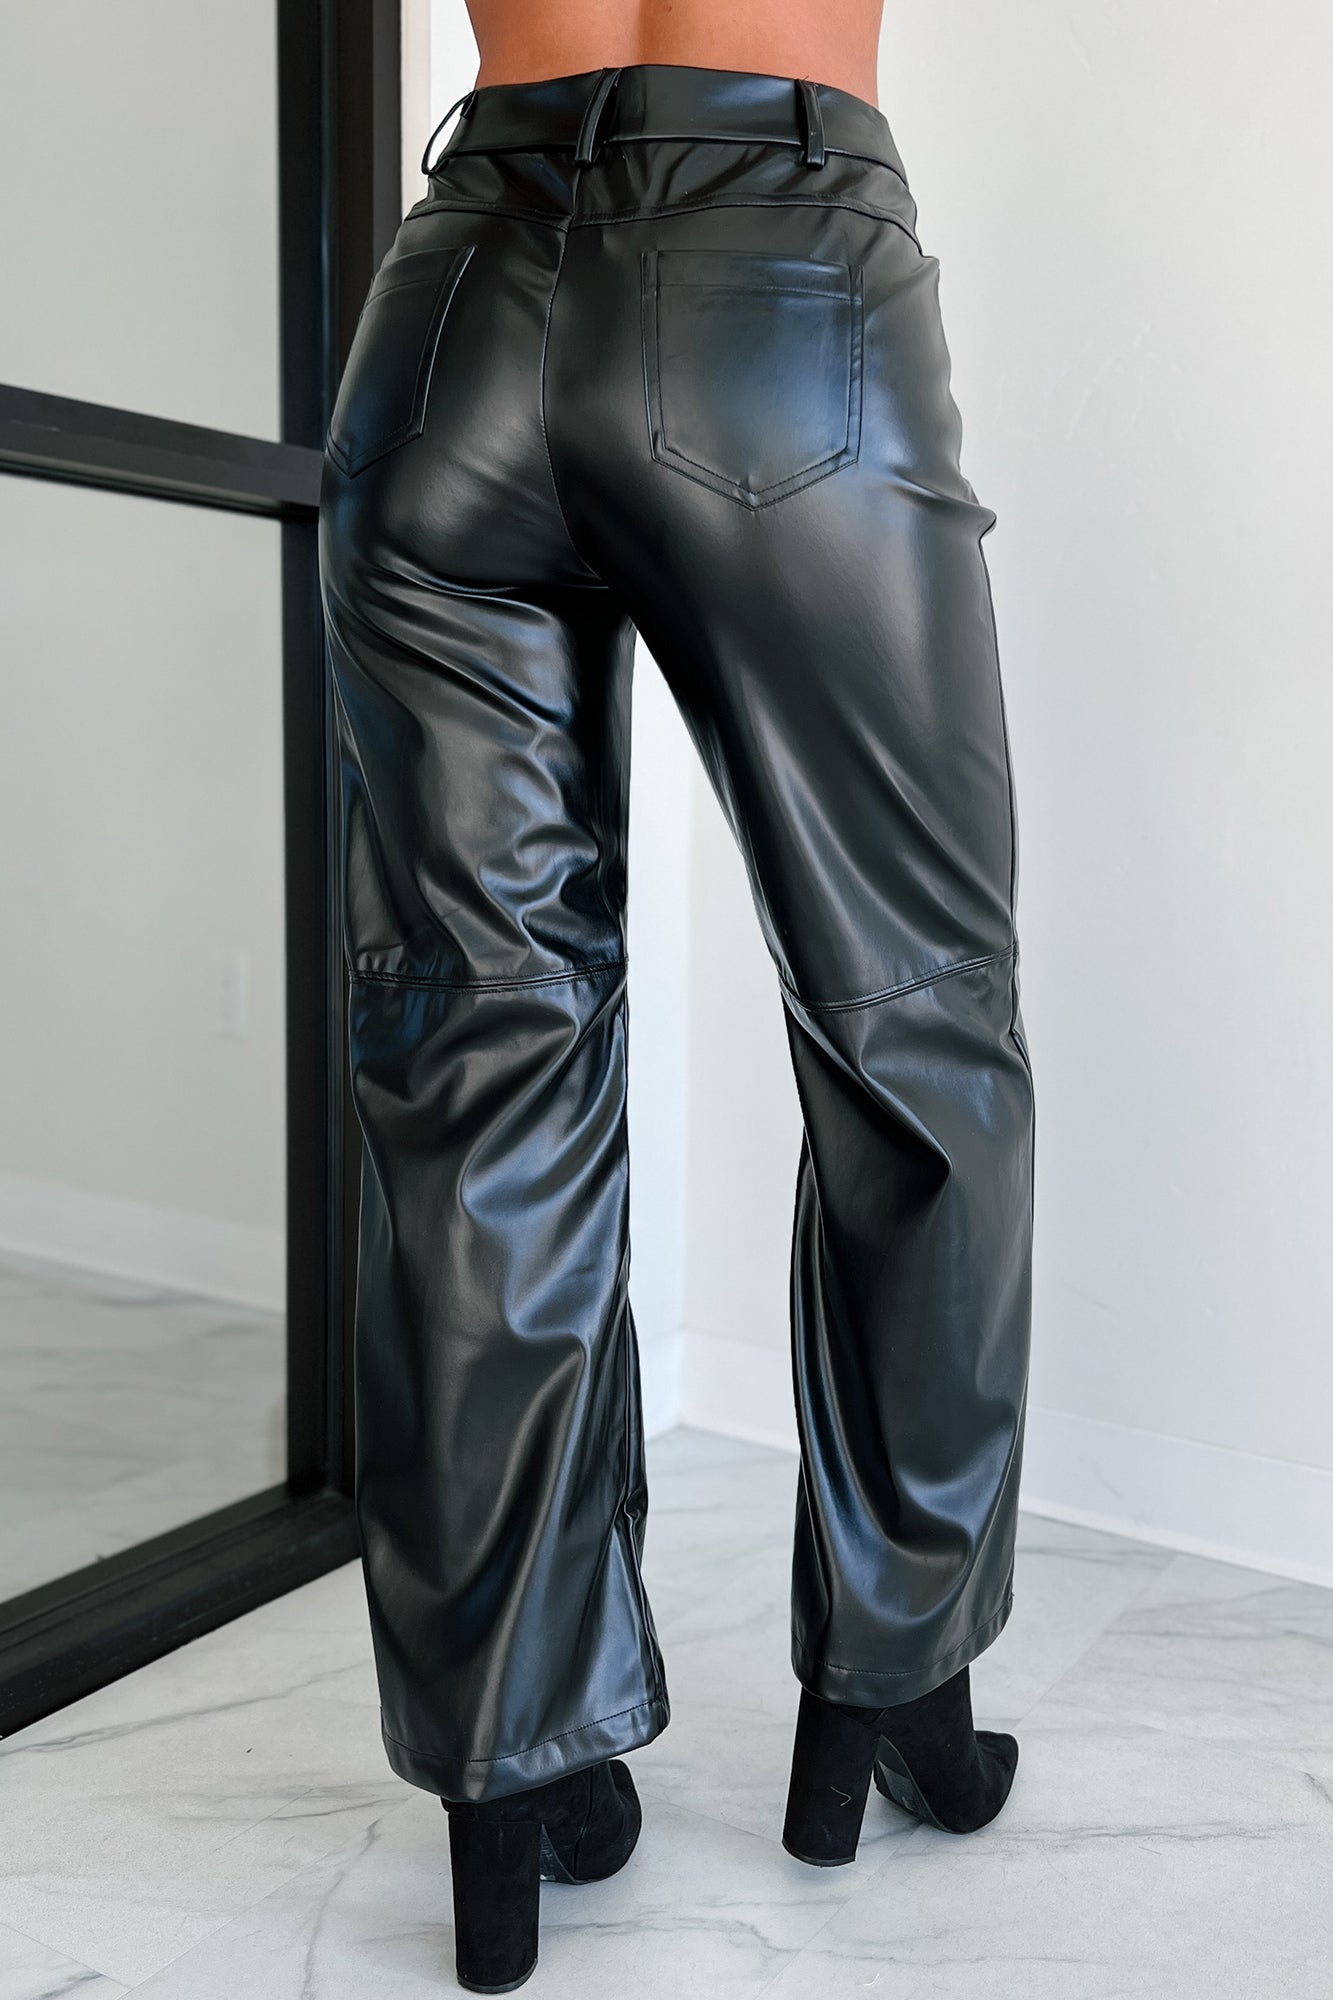 High waisted black dress pants size xs 25” waist, - Depop